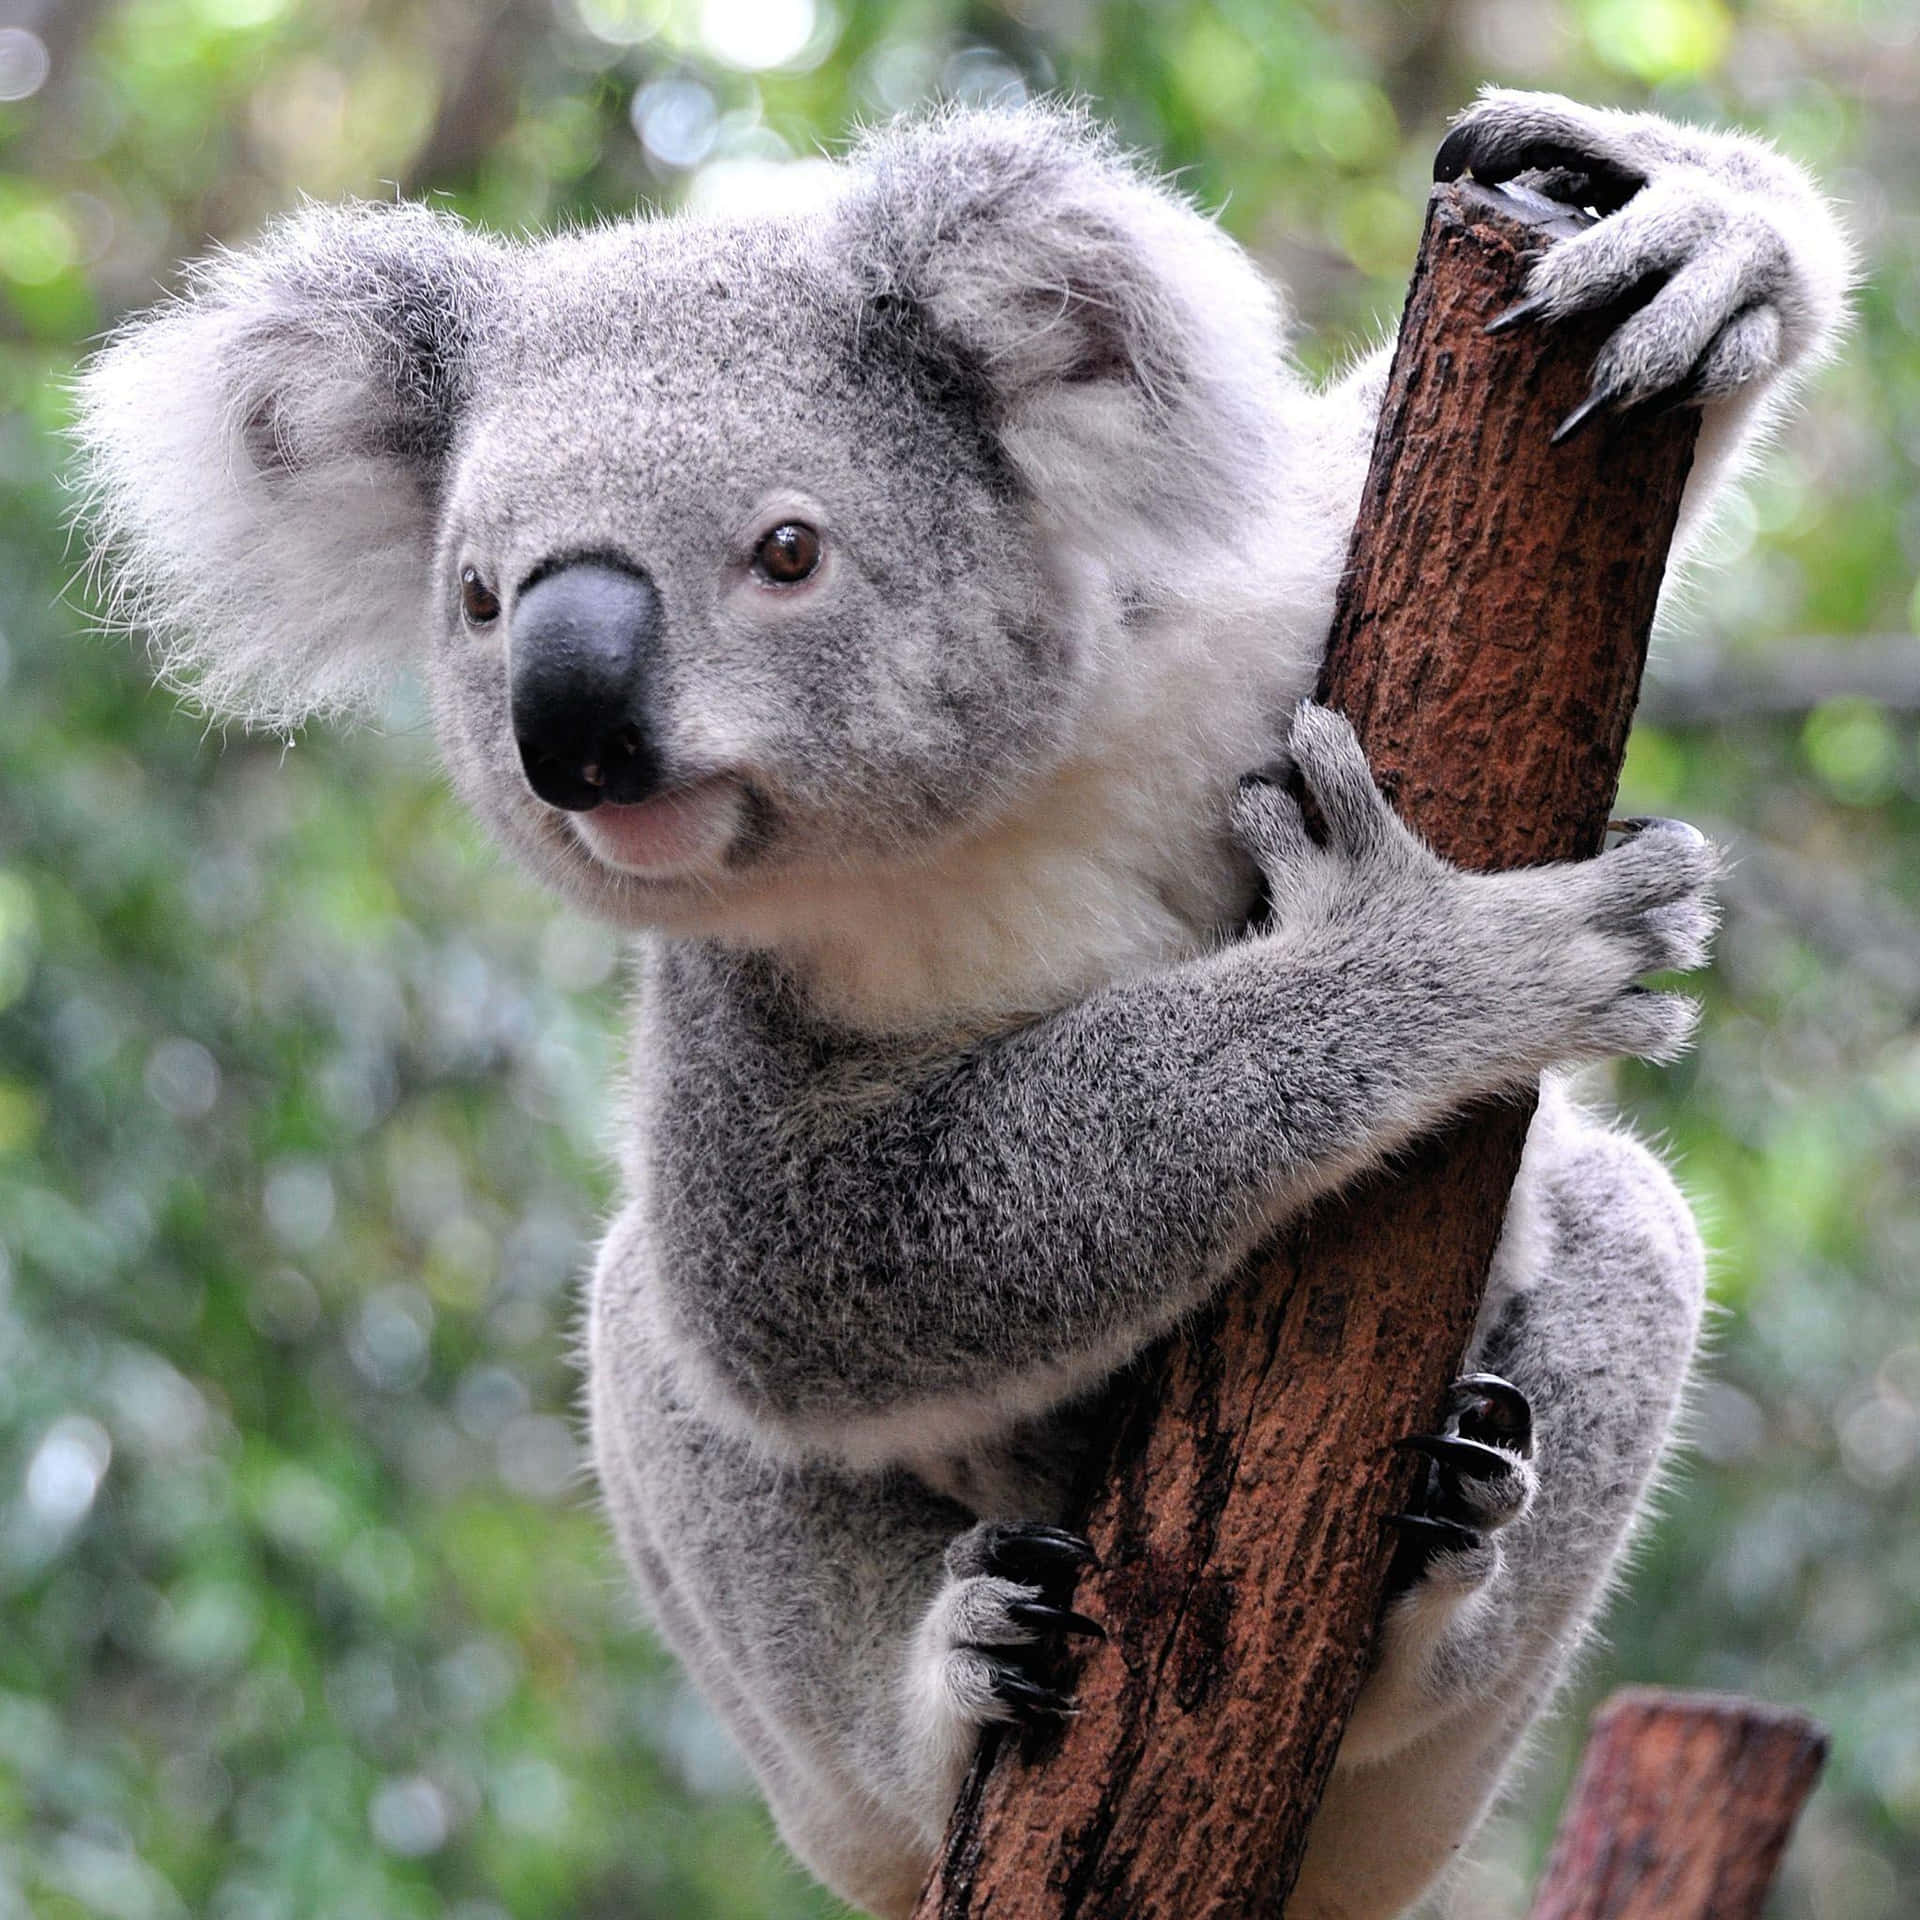 Image  Koala Bear Sitting in a Tree